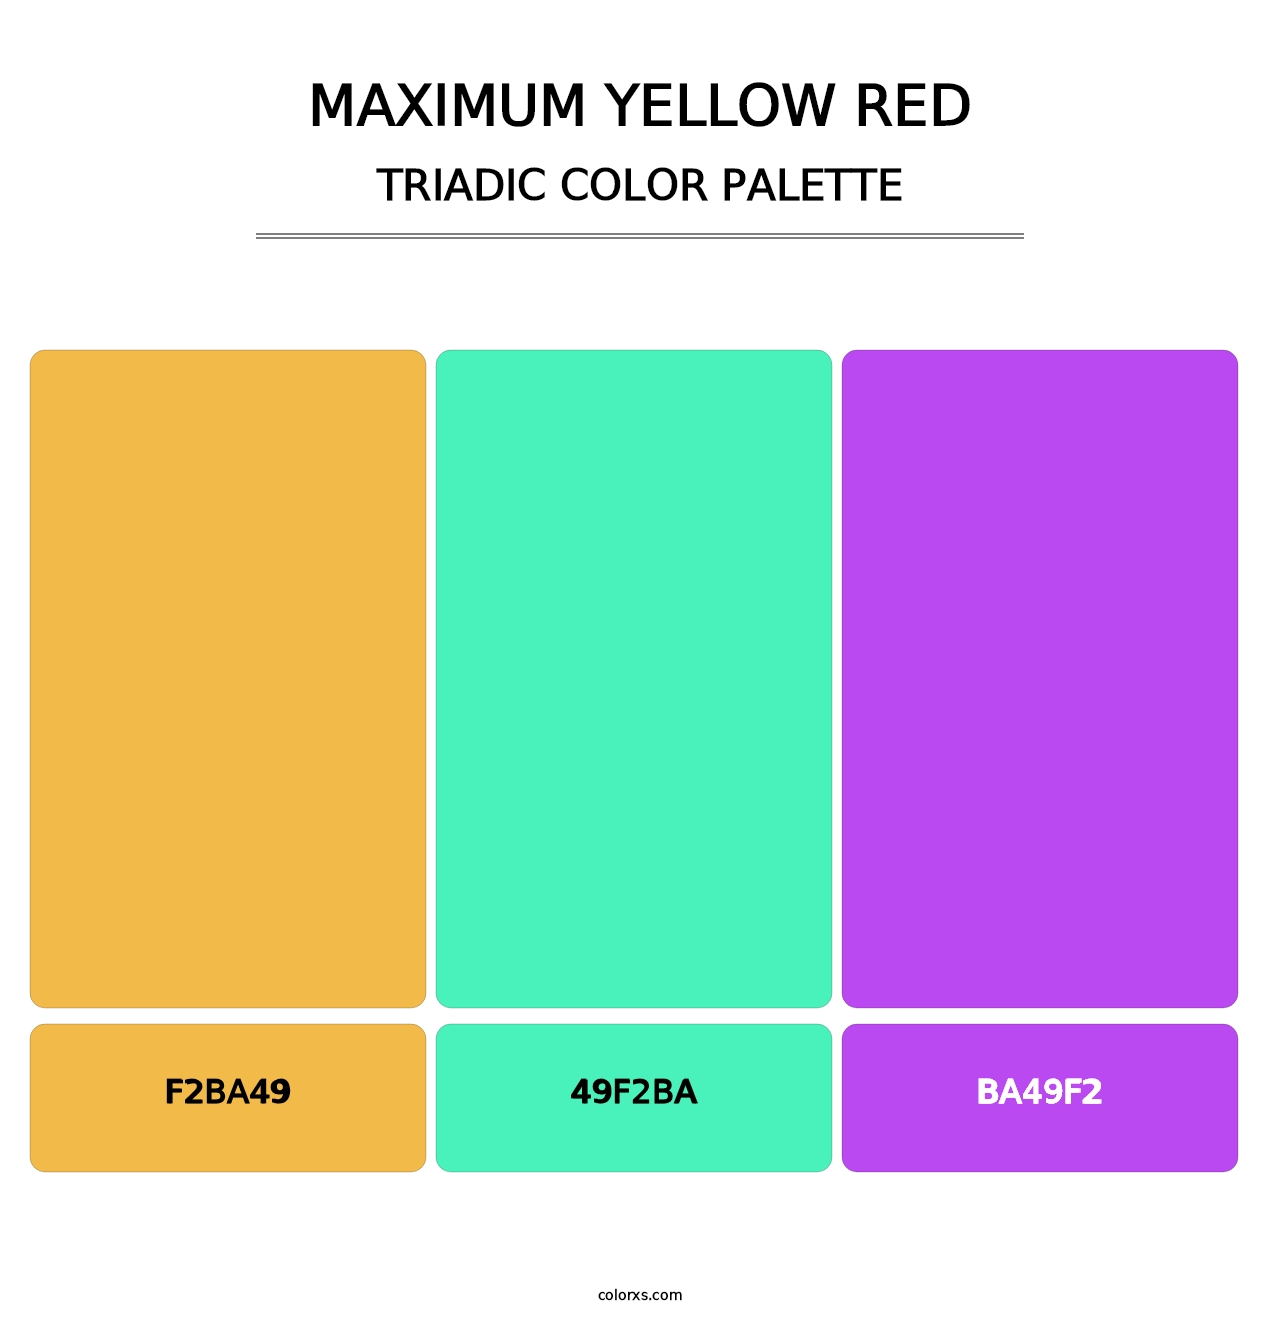 Maximum Yellow Red - Triadic Color Palette